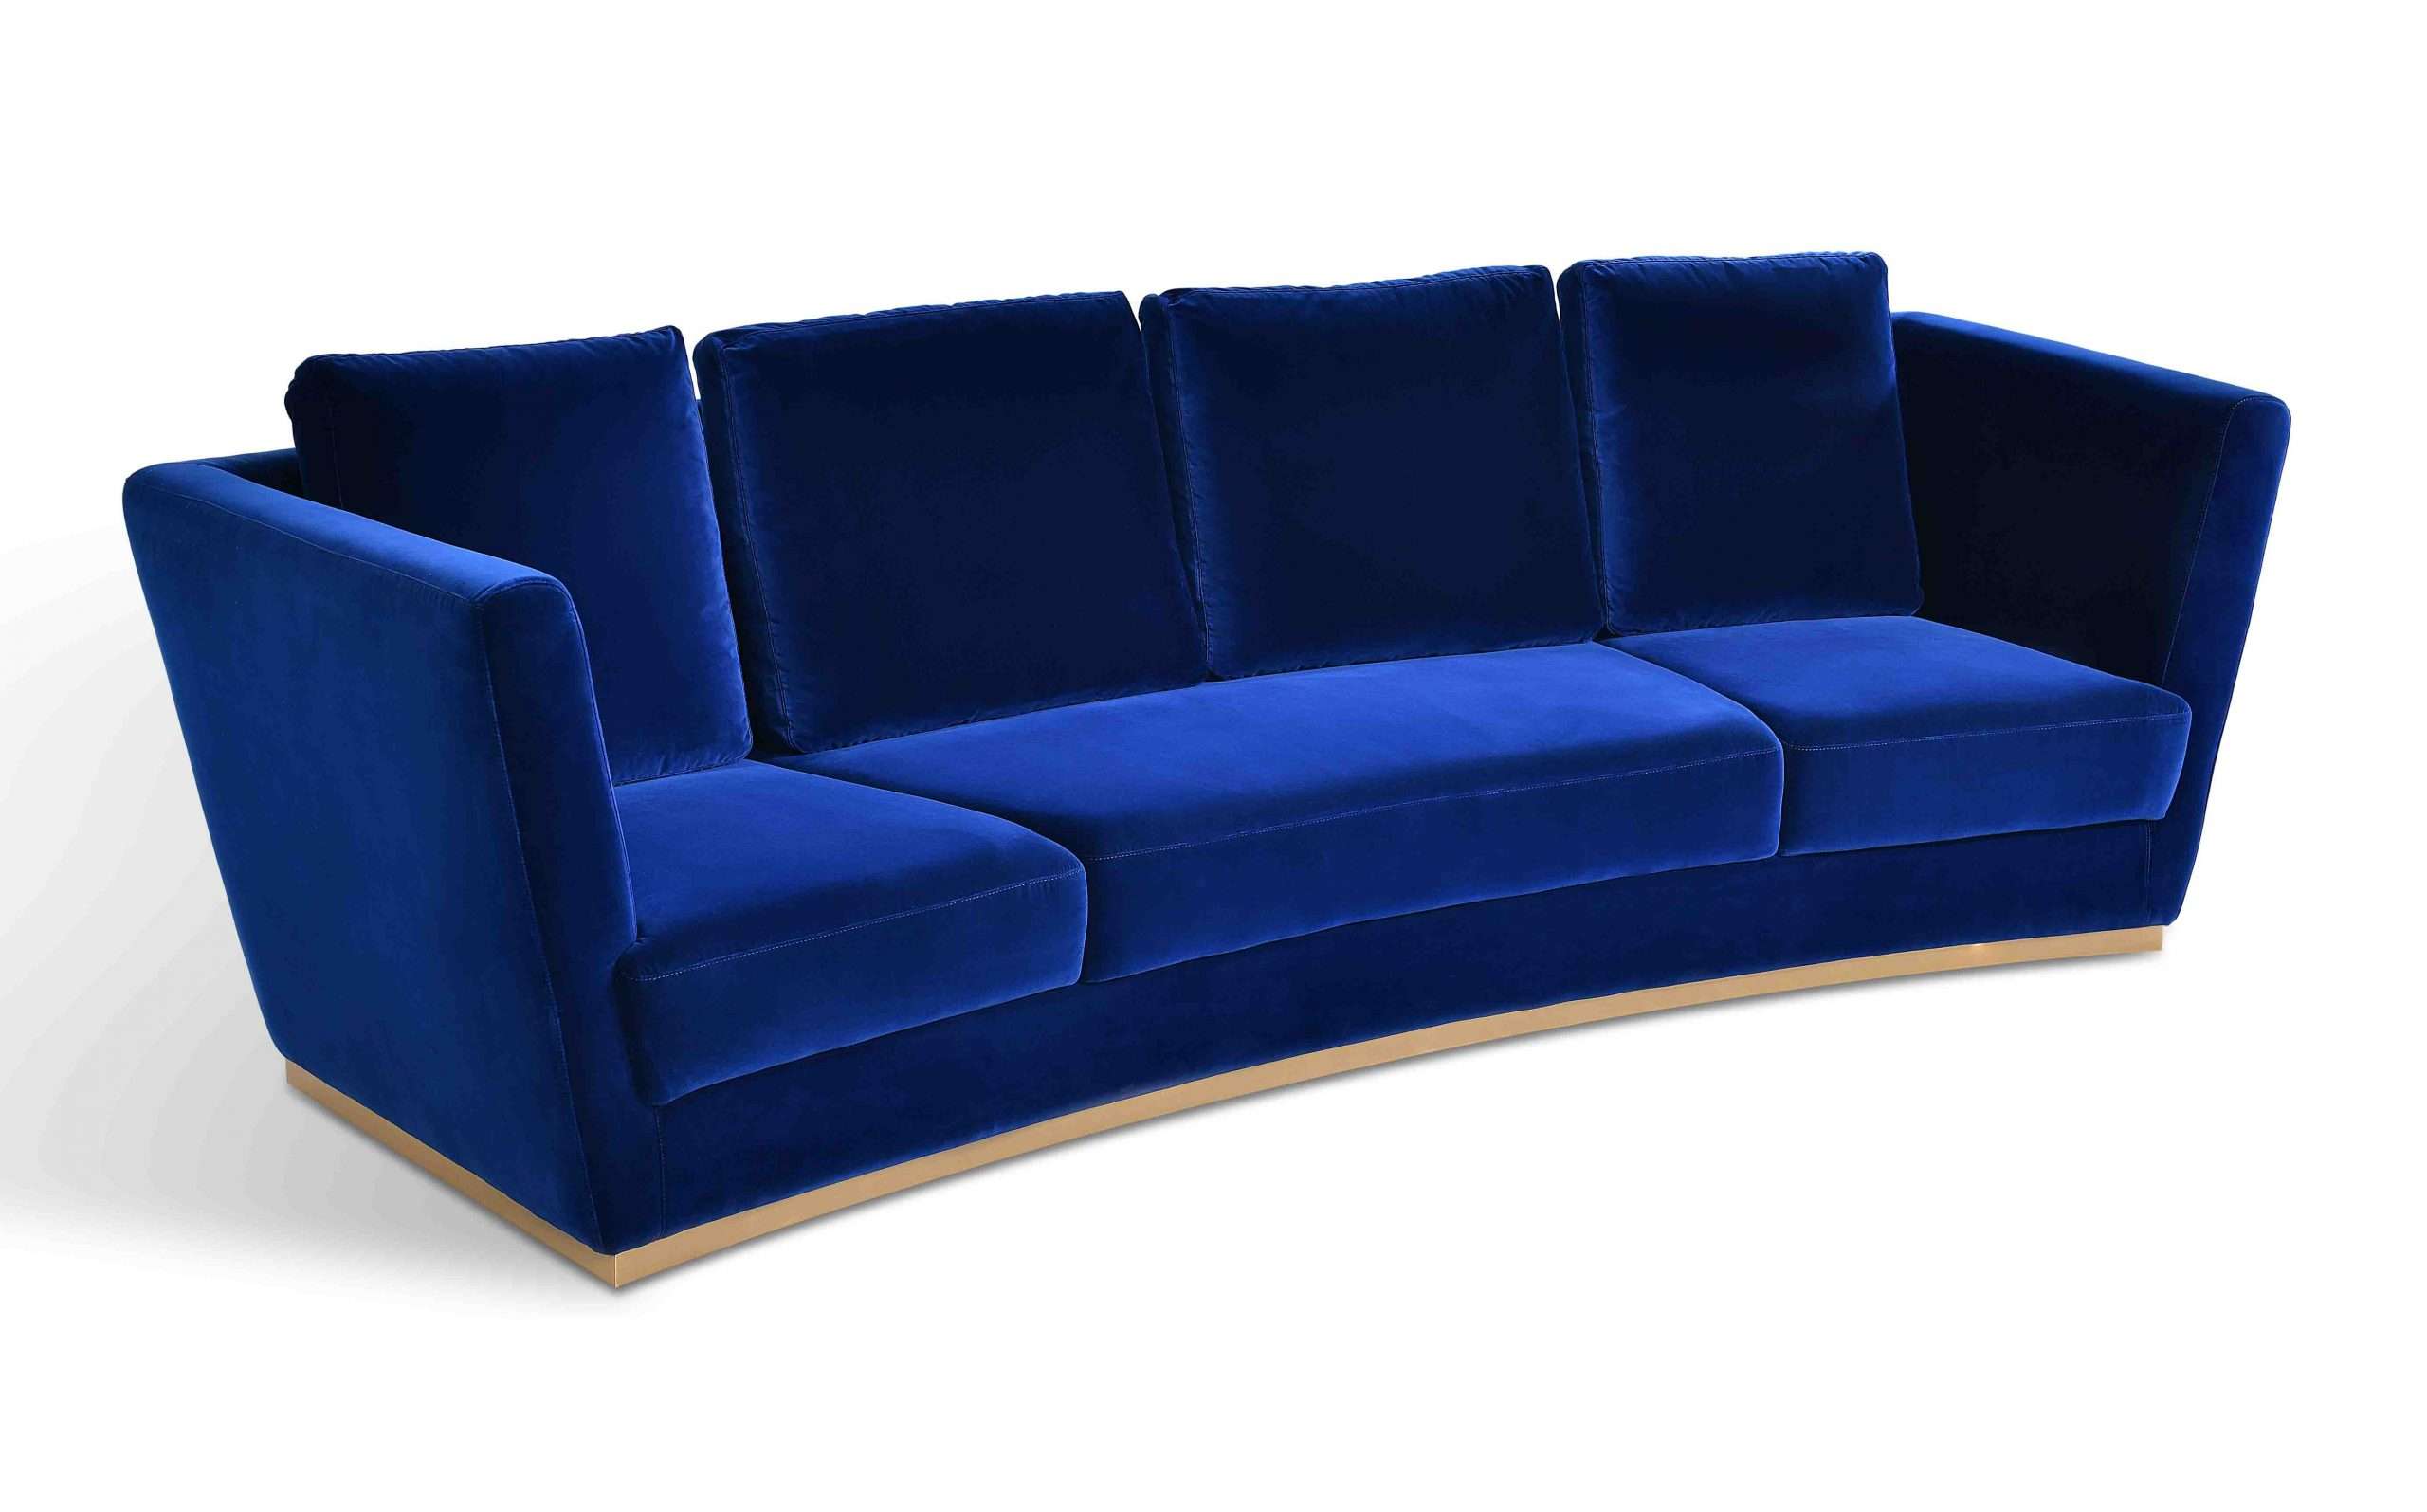 COMPA 3-Seater Sofa